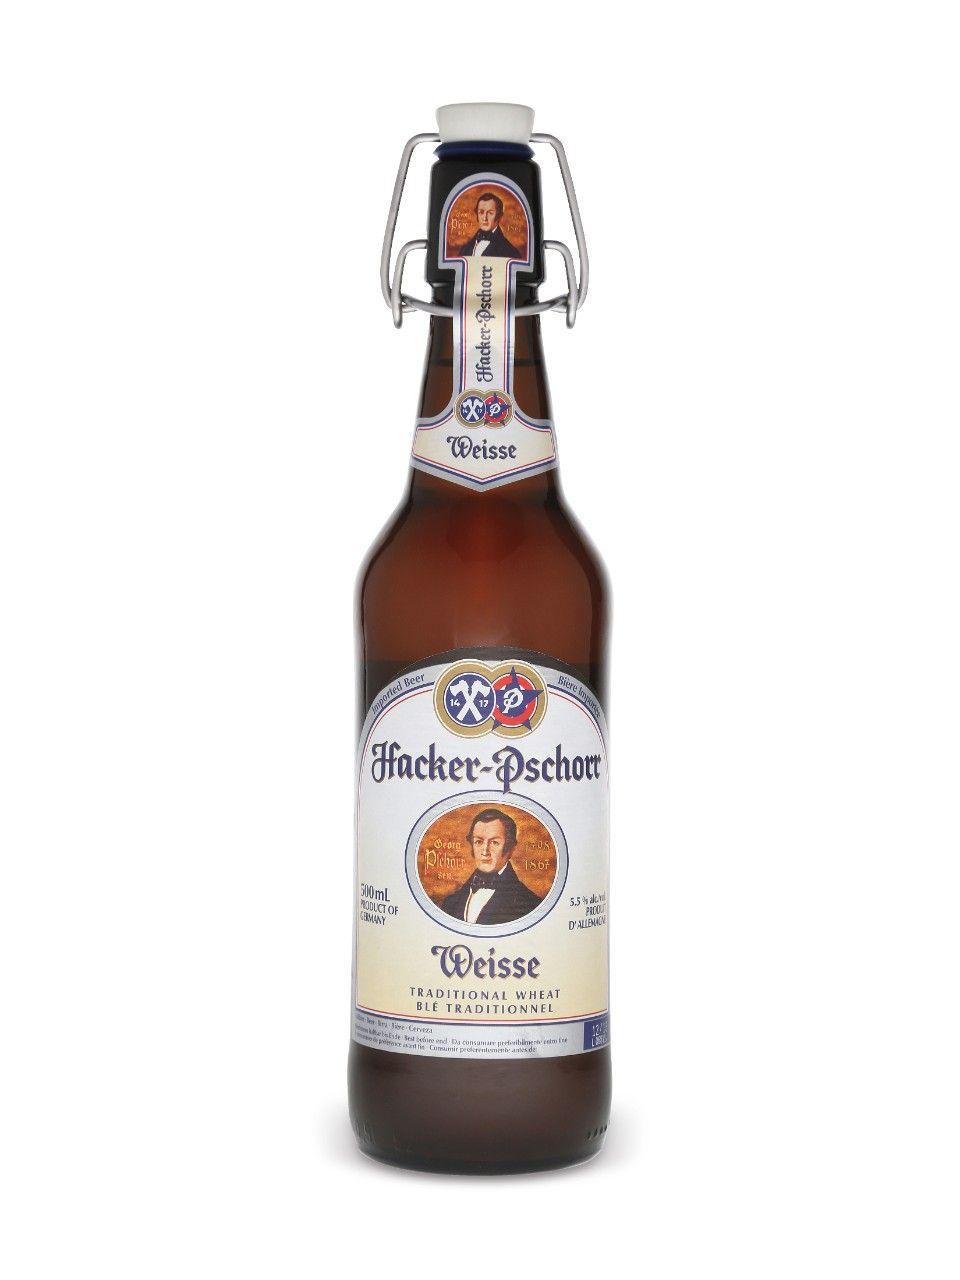 Hacker-Pschorr Logo - Hacker Pschorr Weisse Bier | LCBO